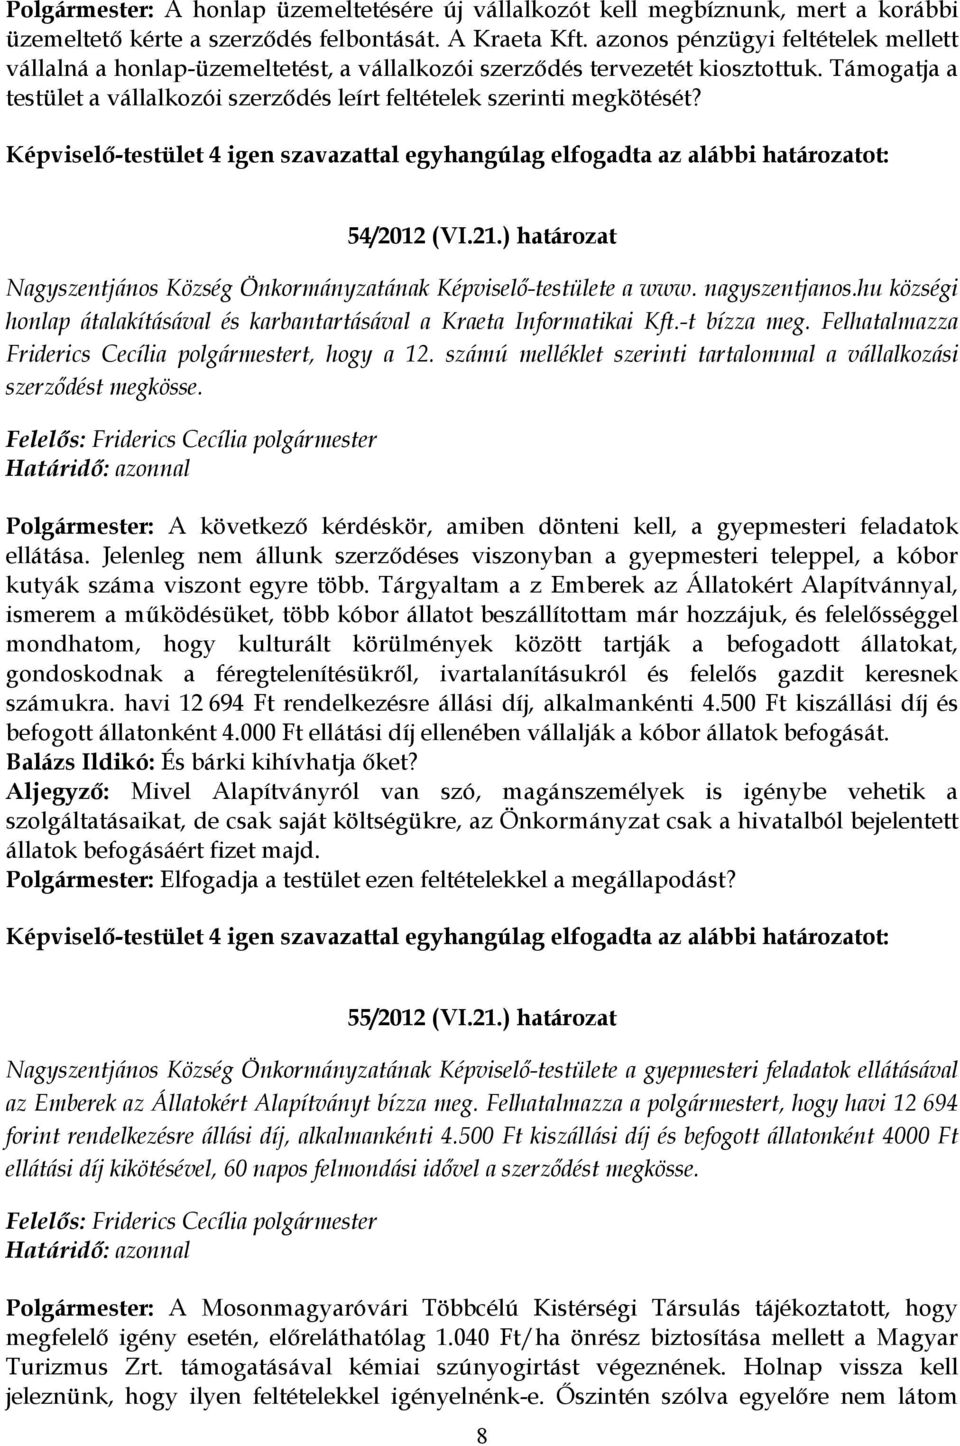 54/2012 (VI.21.) határozat Nagyszentjános Község Önkormányzatának Képviselő-testülete a www. nagyszentjanos.hu községi honlap átalakításával és karbantartásával a Kraeta Informatikai Kft.-t bízza meg.